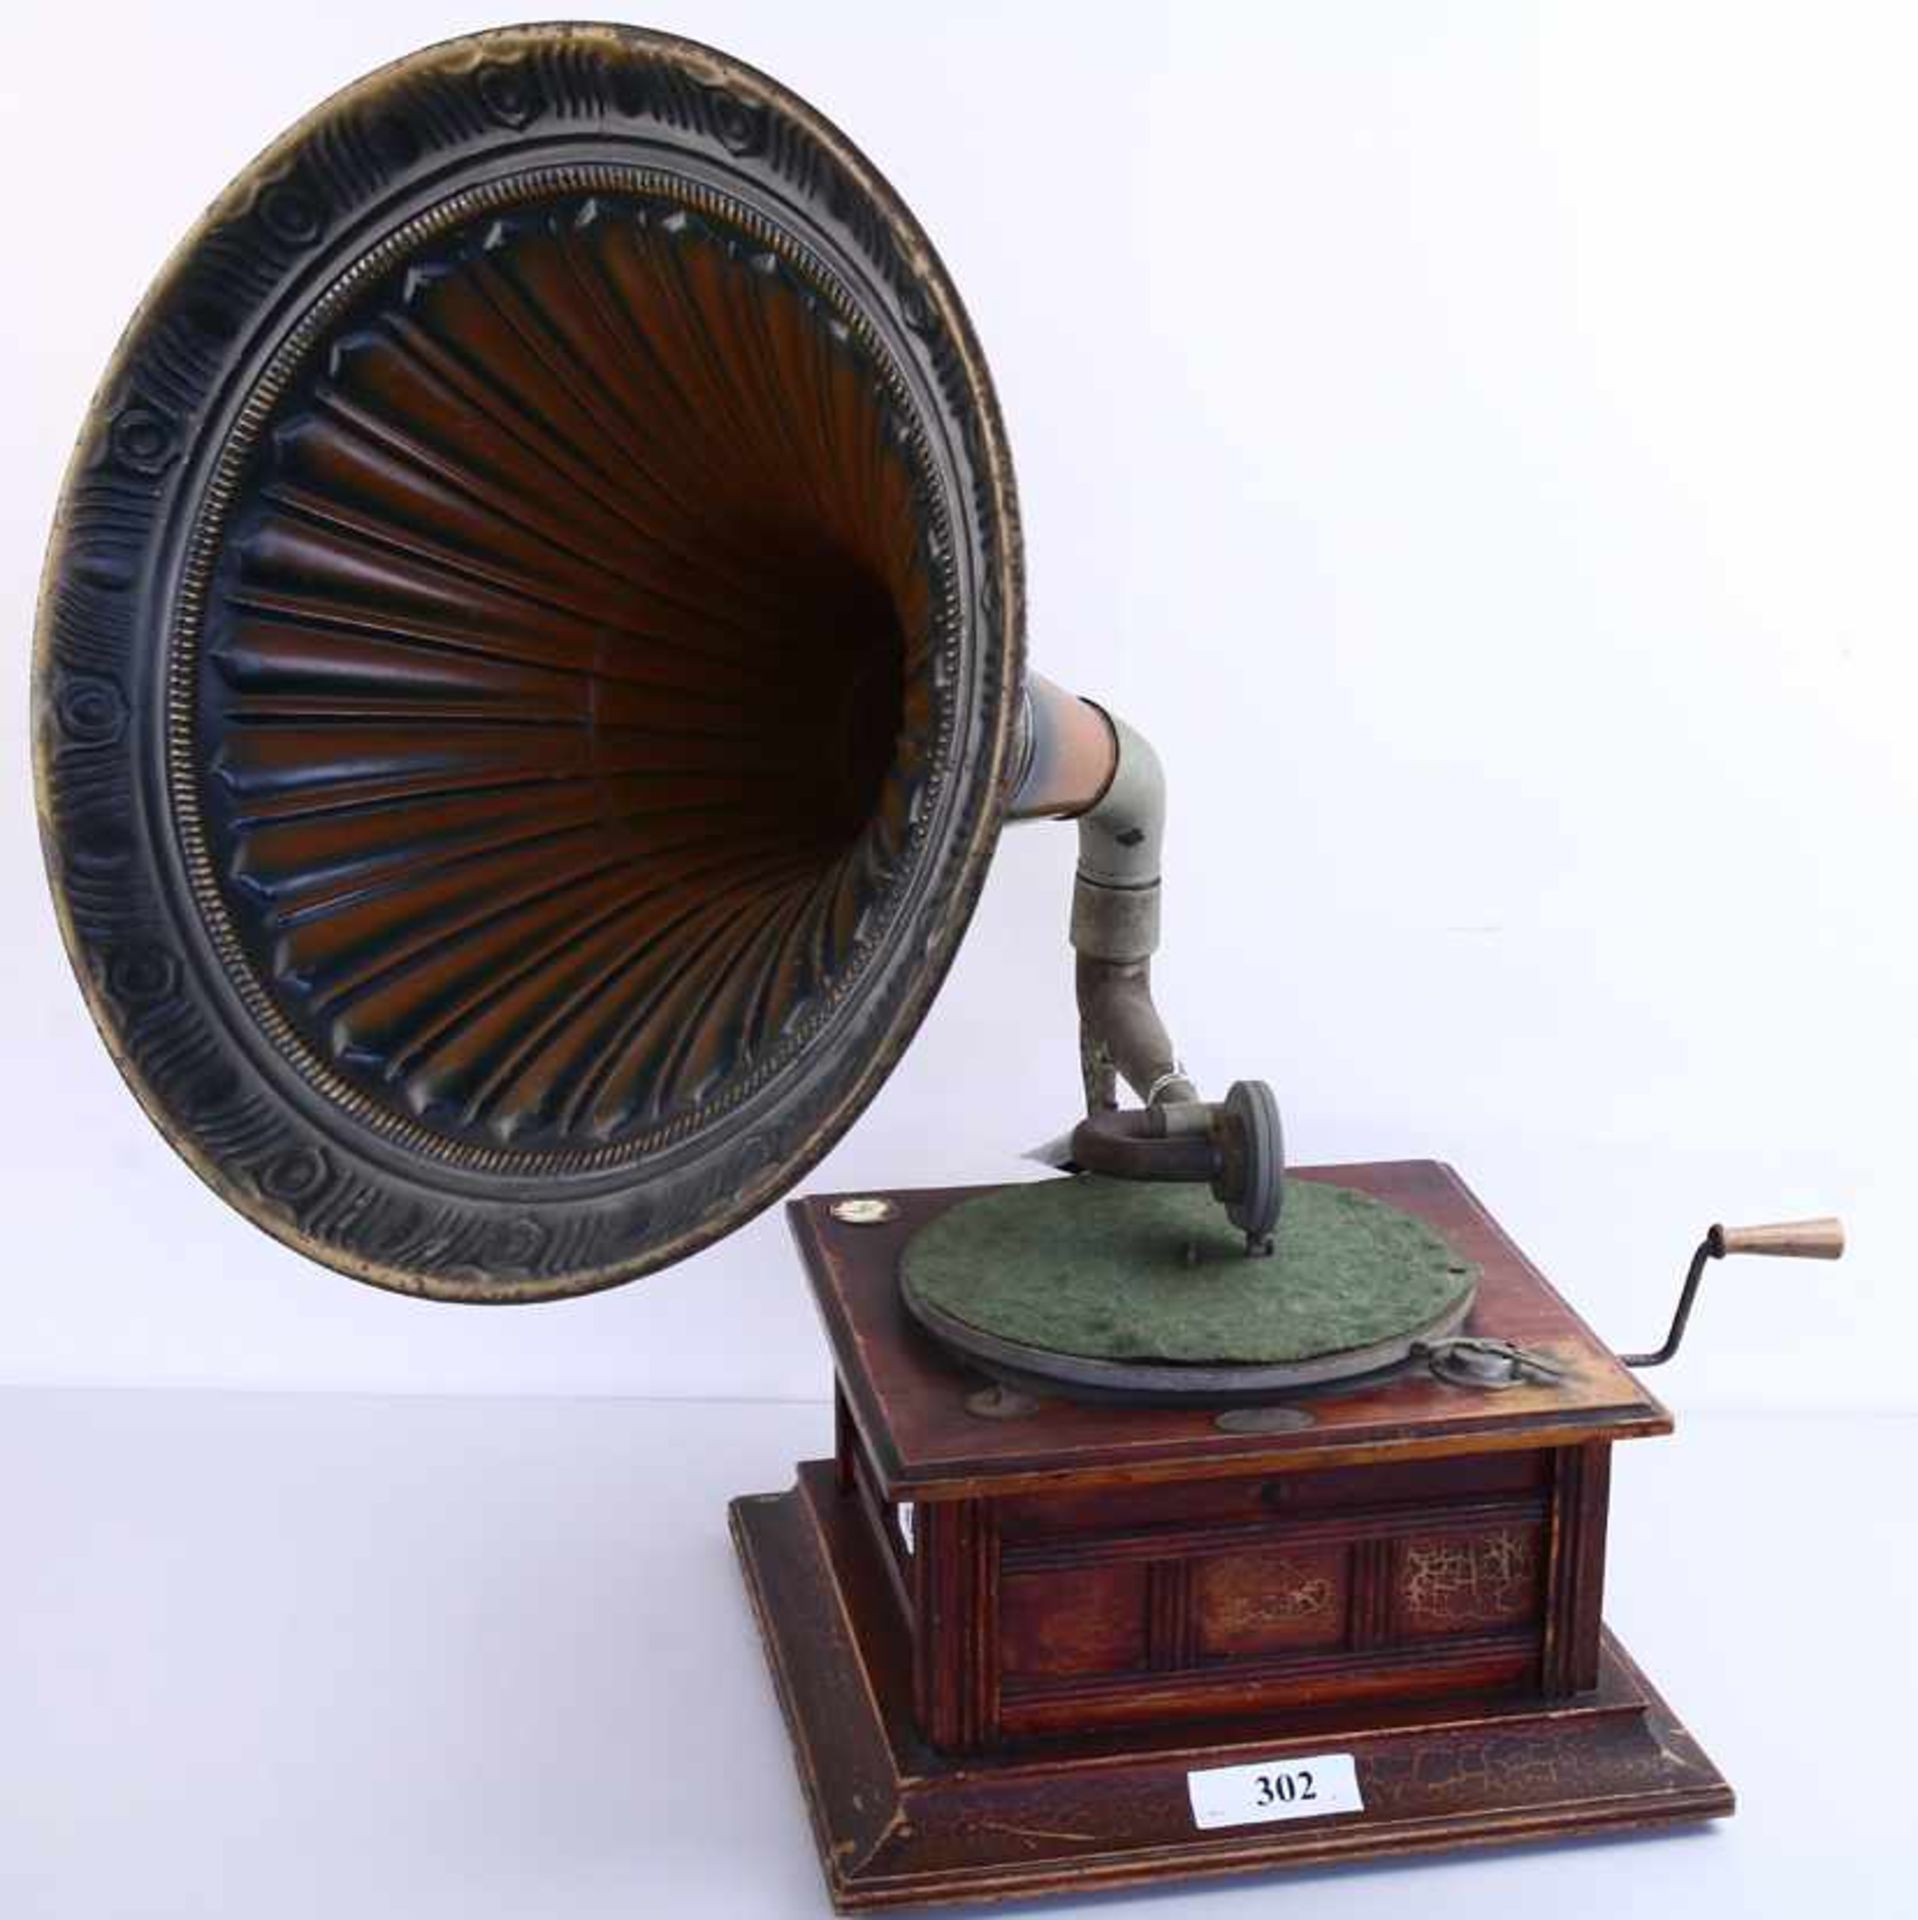 Hoorngrammofoon, Polyphon - Houten kast met groen/bruin/gouden gestanste blikken hoorn (dm 47 cm),